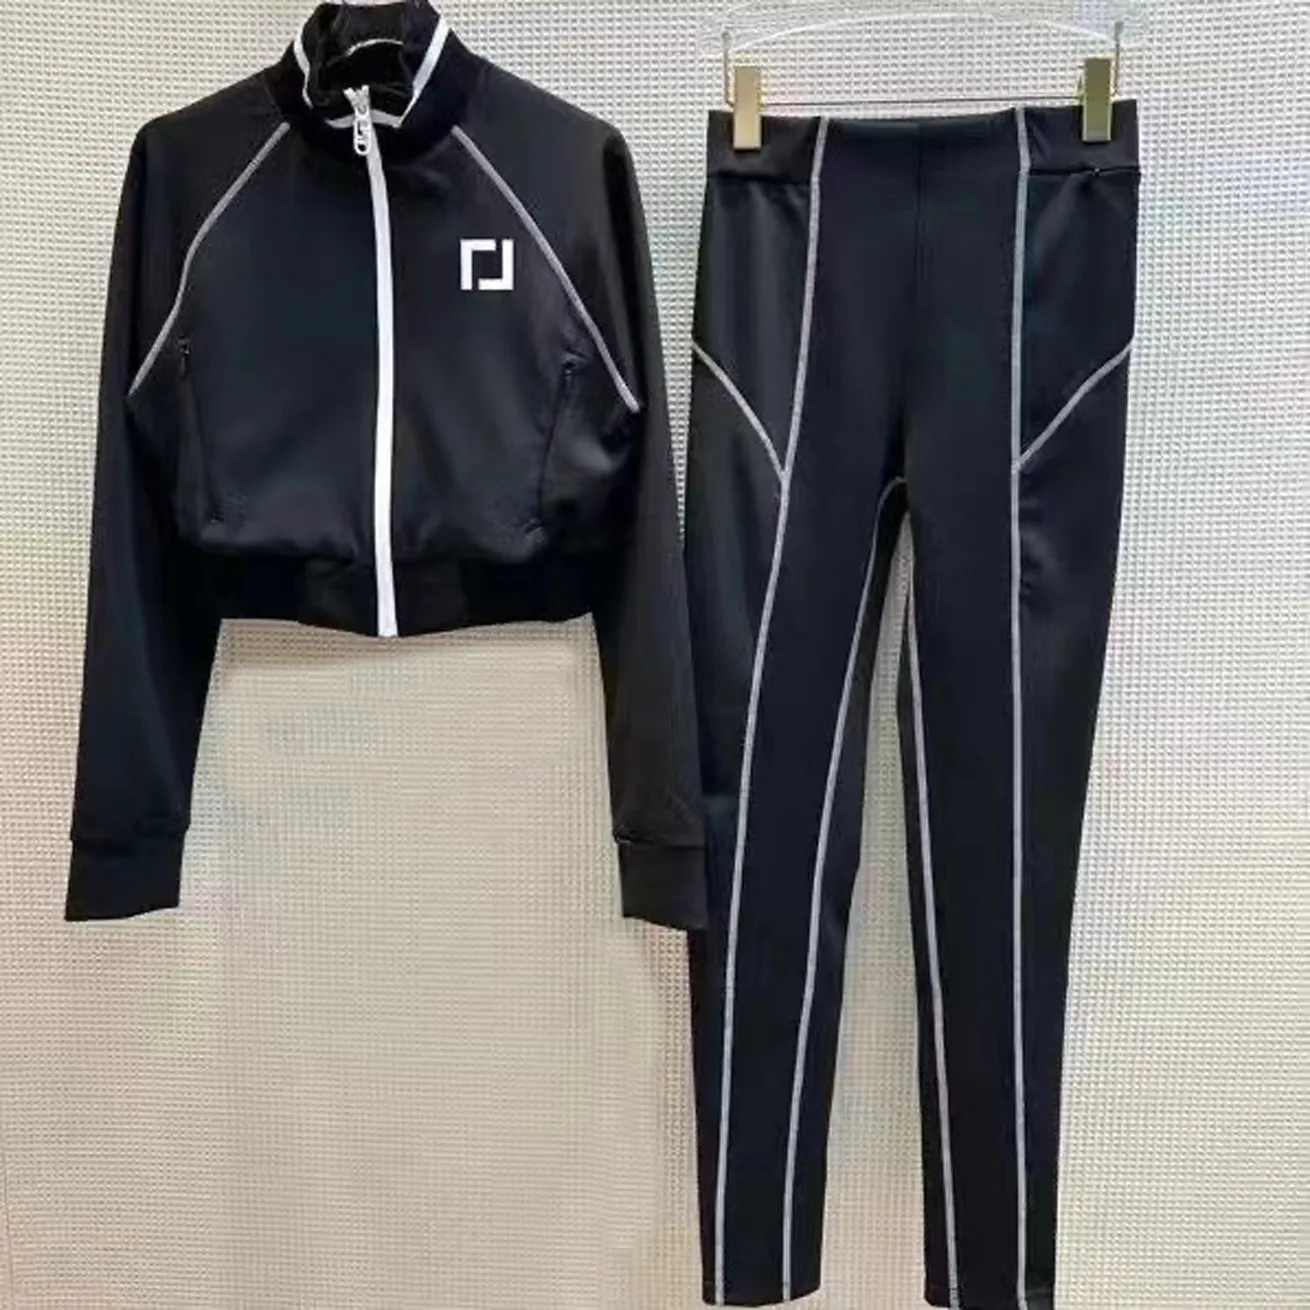 디자이너 여성 재킷 2 피스 세트 바지의 옷 겉옷 럭셔리 브랜드 의류 이중 F 긴 슬리브 레저 스타일 스포츠웨어 크기 smlxl